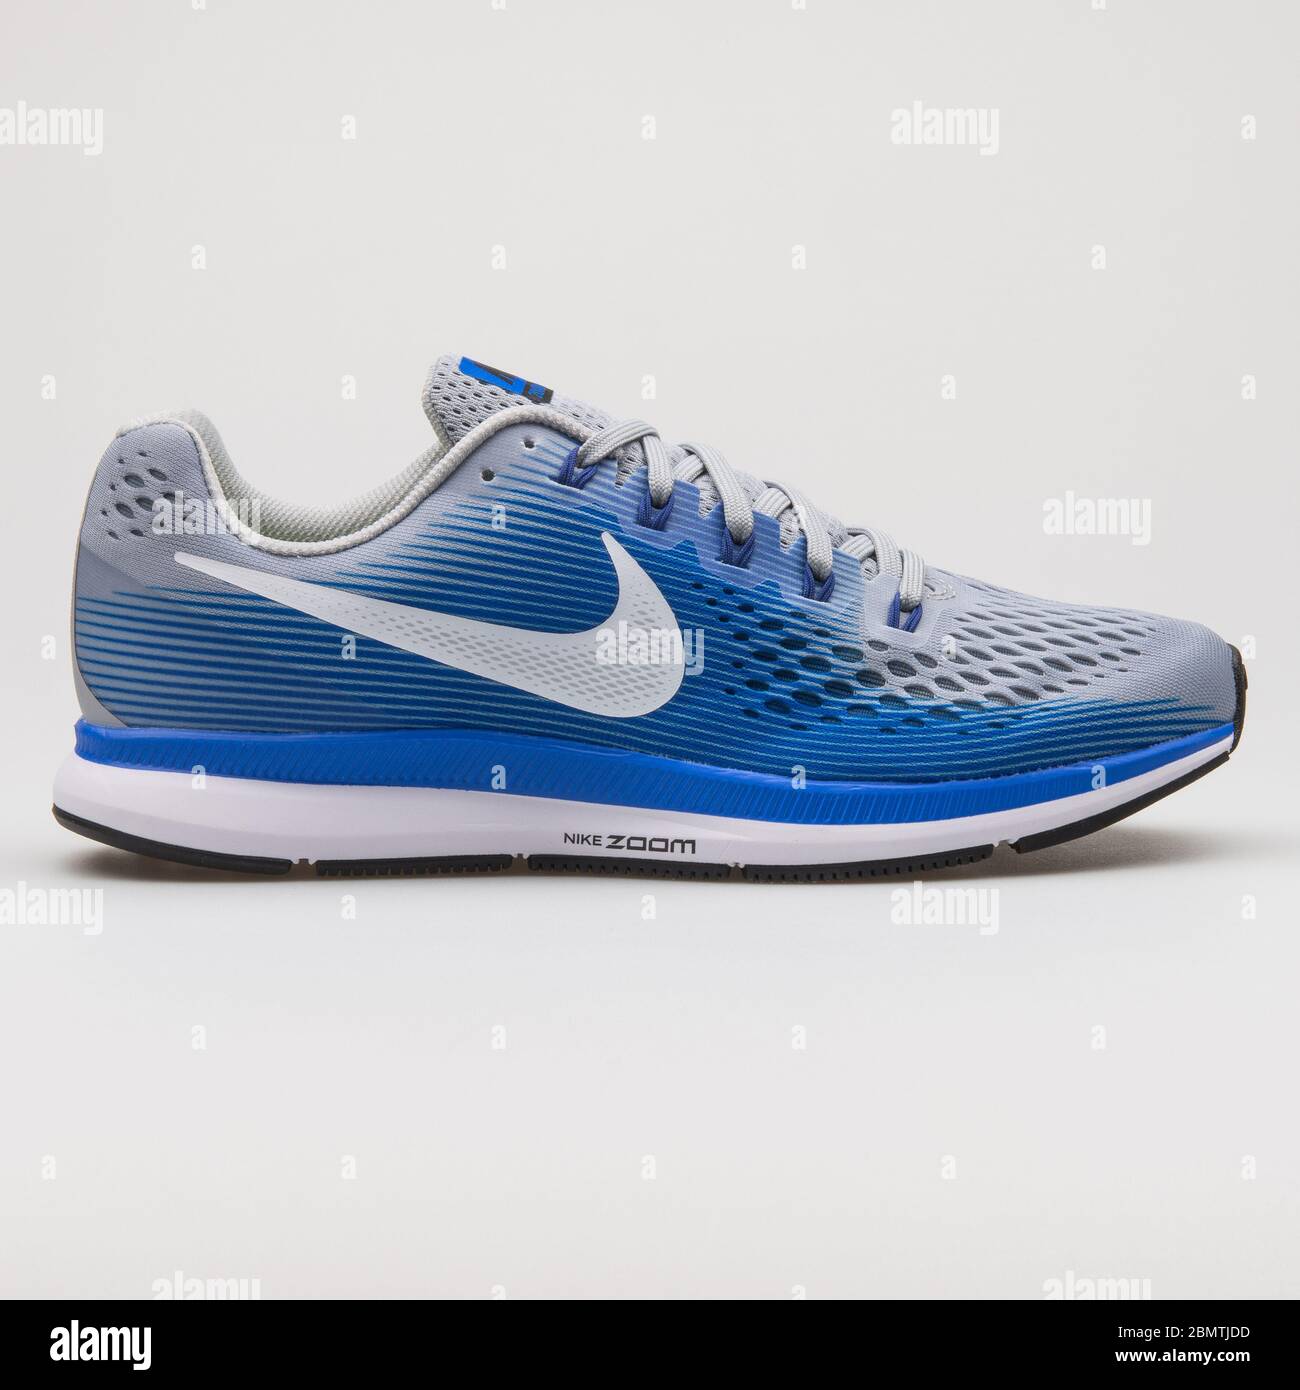 VIENNE, AUTRICHE - 14 FÉVRIER 2018 : sneaker Nike Air Zoom Pegasus 34 bleue  et grise sur fond blanc Photo Stock - Alamy